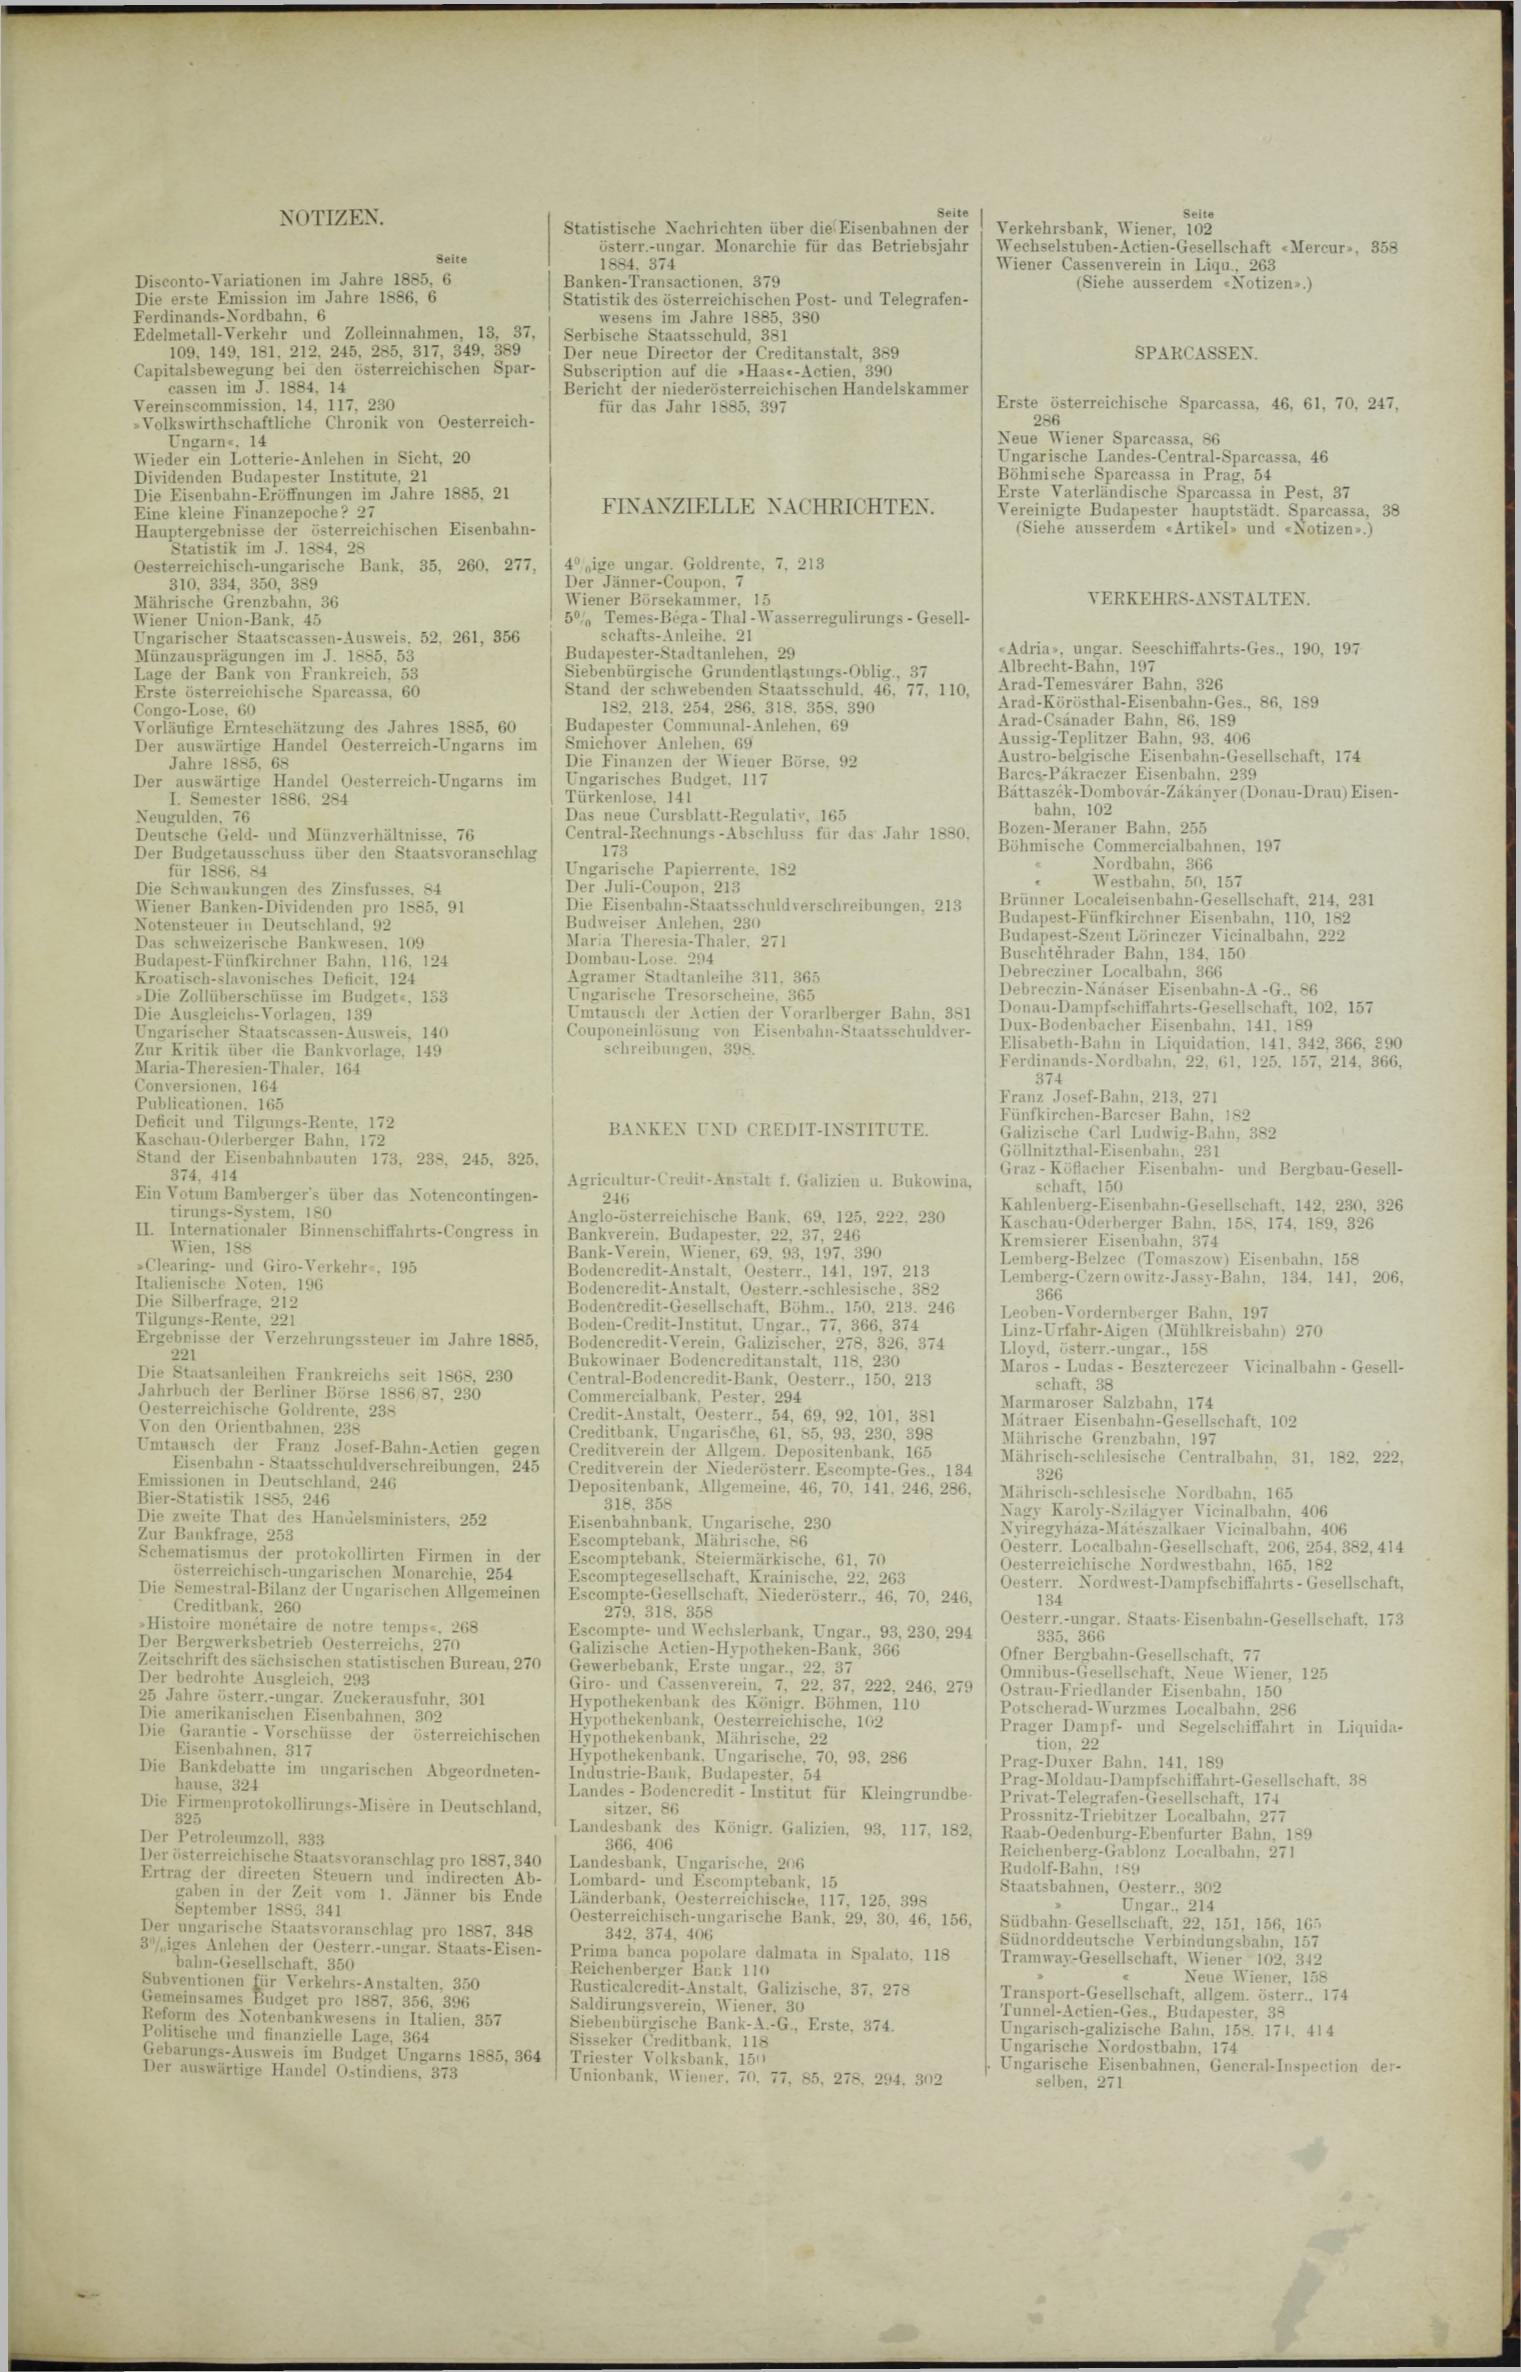 Der Tresor 21.10.1886 - Seite 11